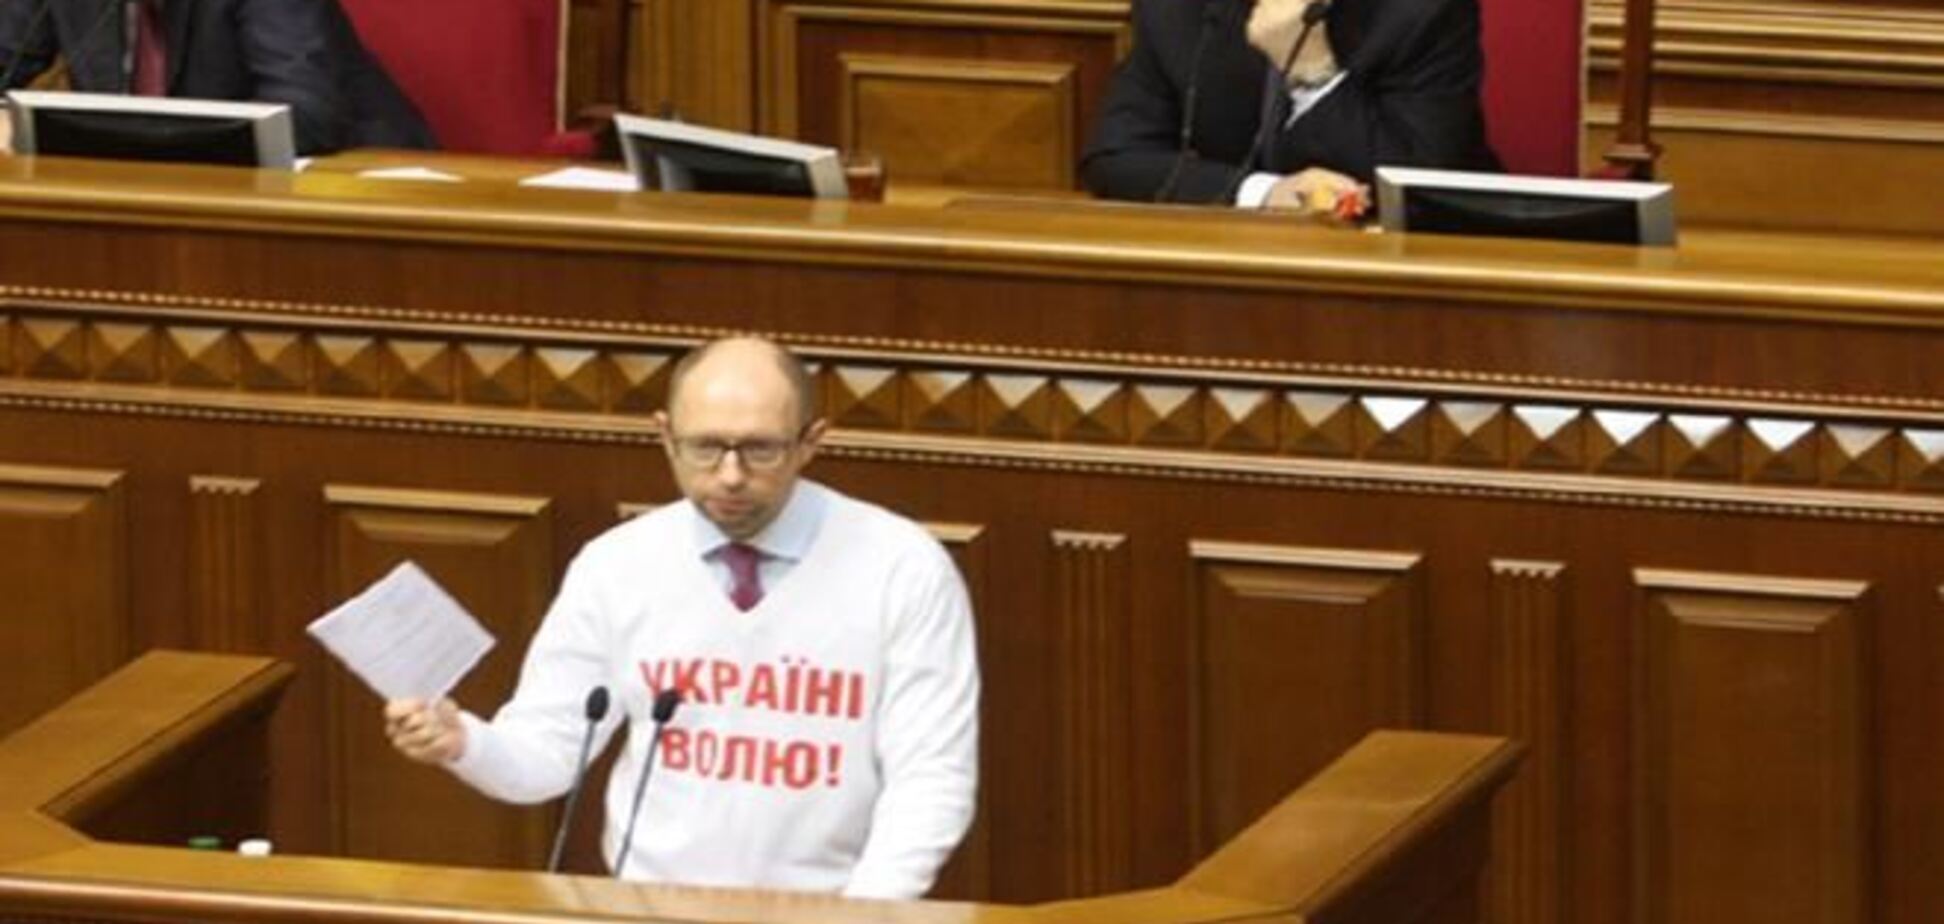 Опозиція не підтримала порядку денного Ради з 'законопроектами Тимошенко'